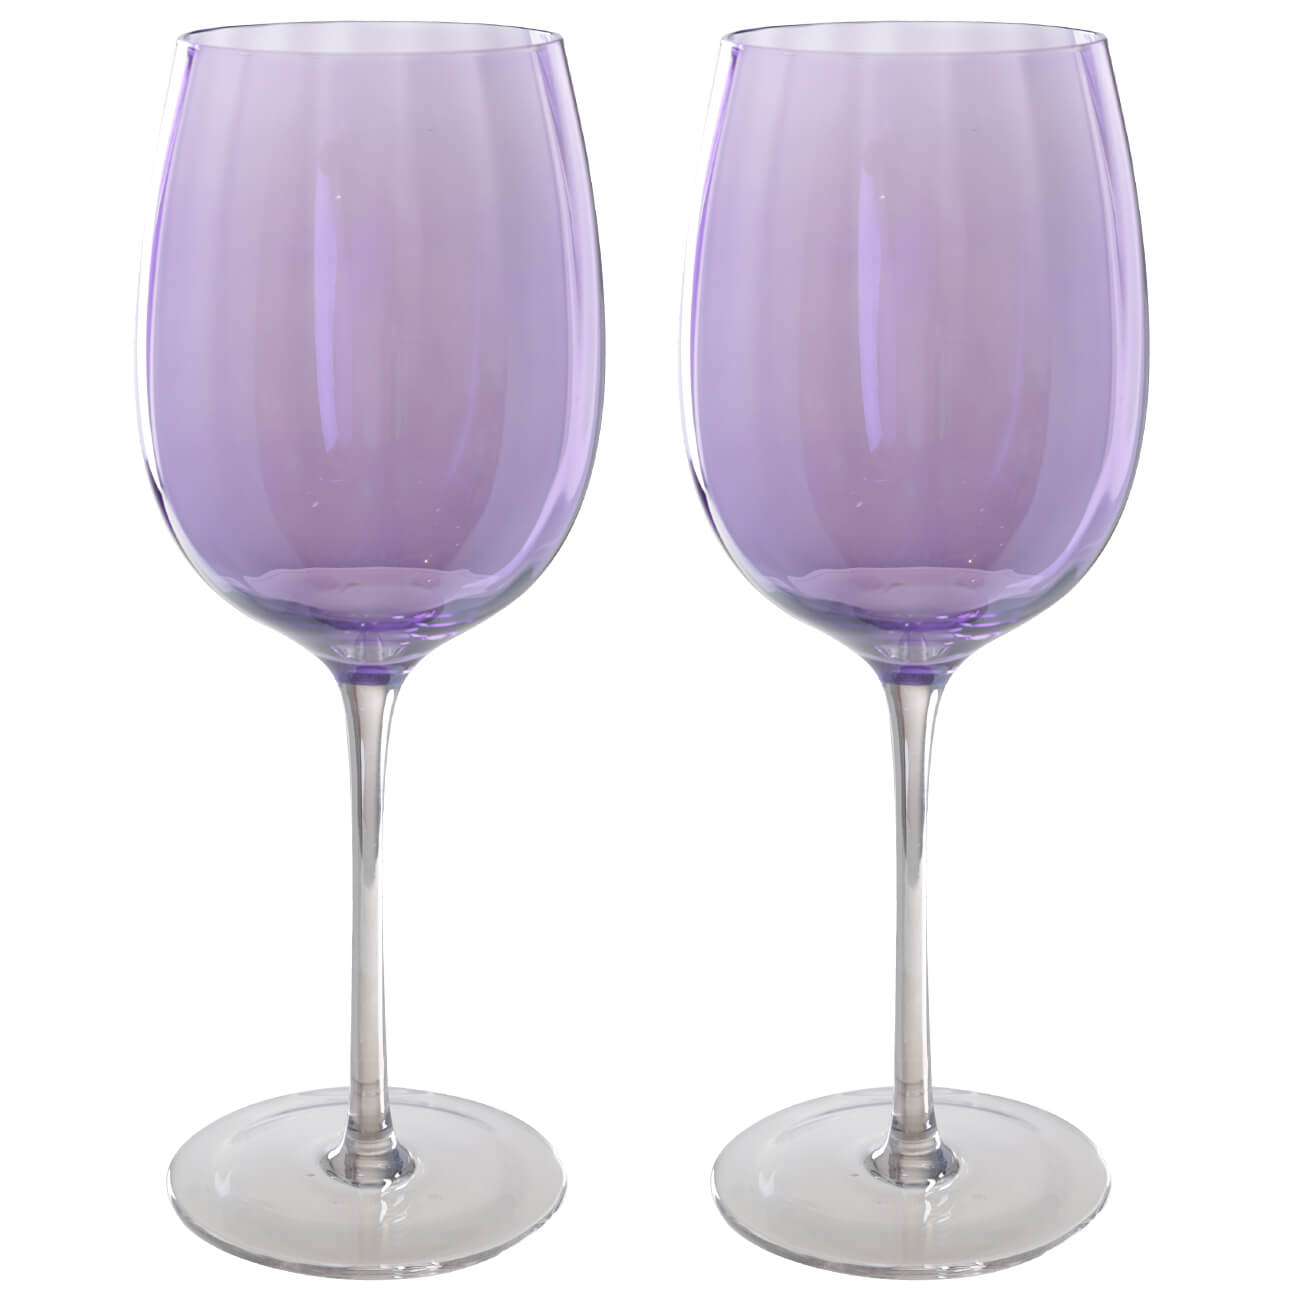 Бокал для вина, 470 мл, 2 шт, стекло, фиолетовый, Filo R color очки маска для езды на мототехнике стекло сине фиолетовый хамелеон черно белые ом 18